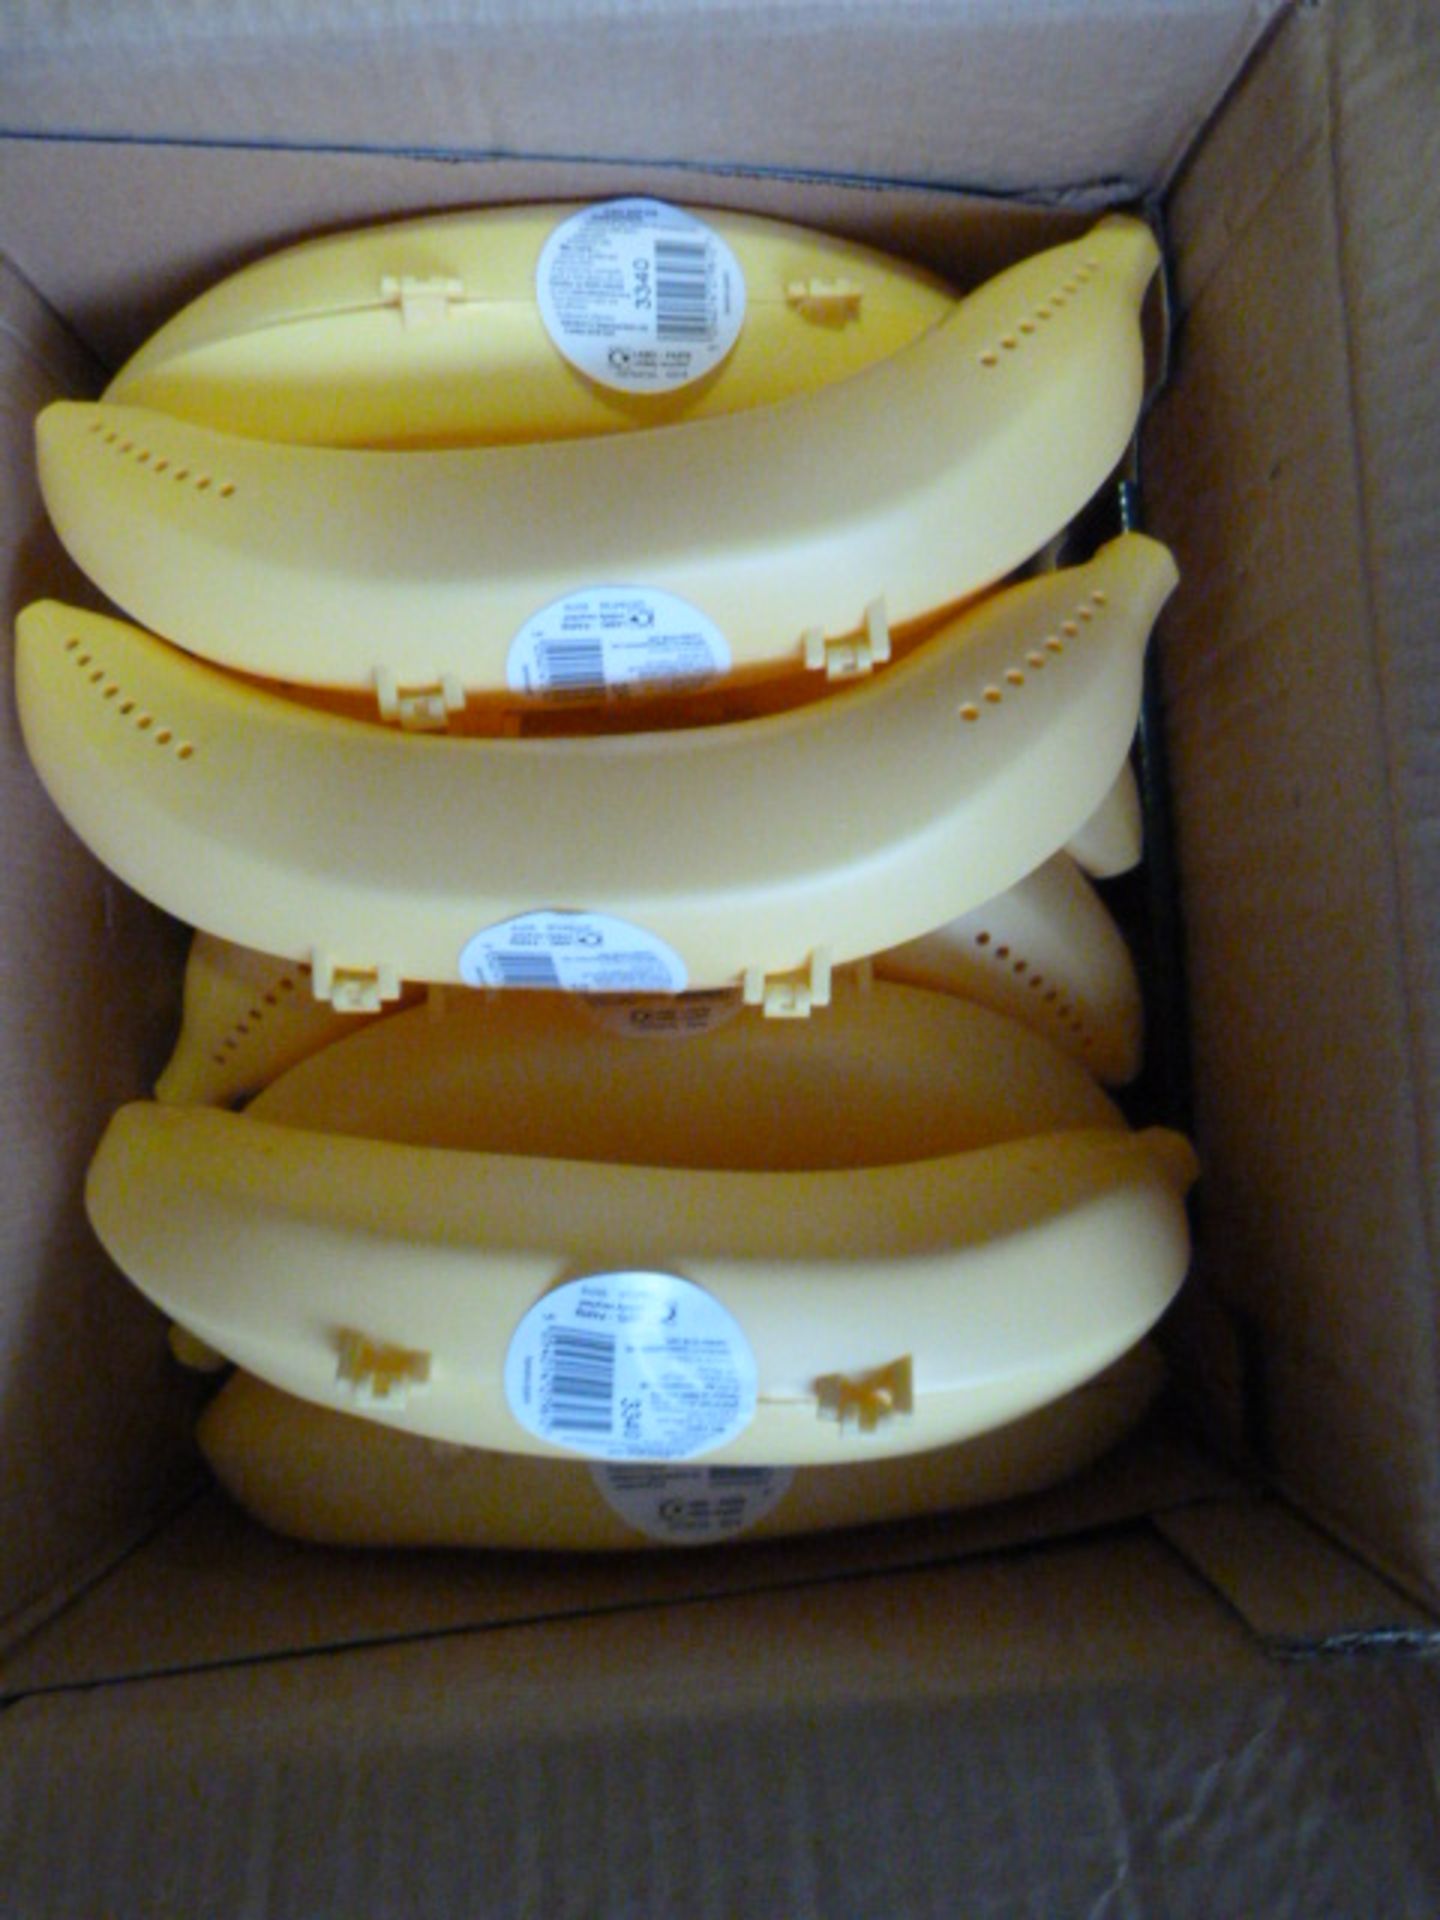 Box of 12 Banana Guard Storage Cases